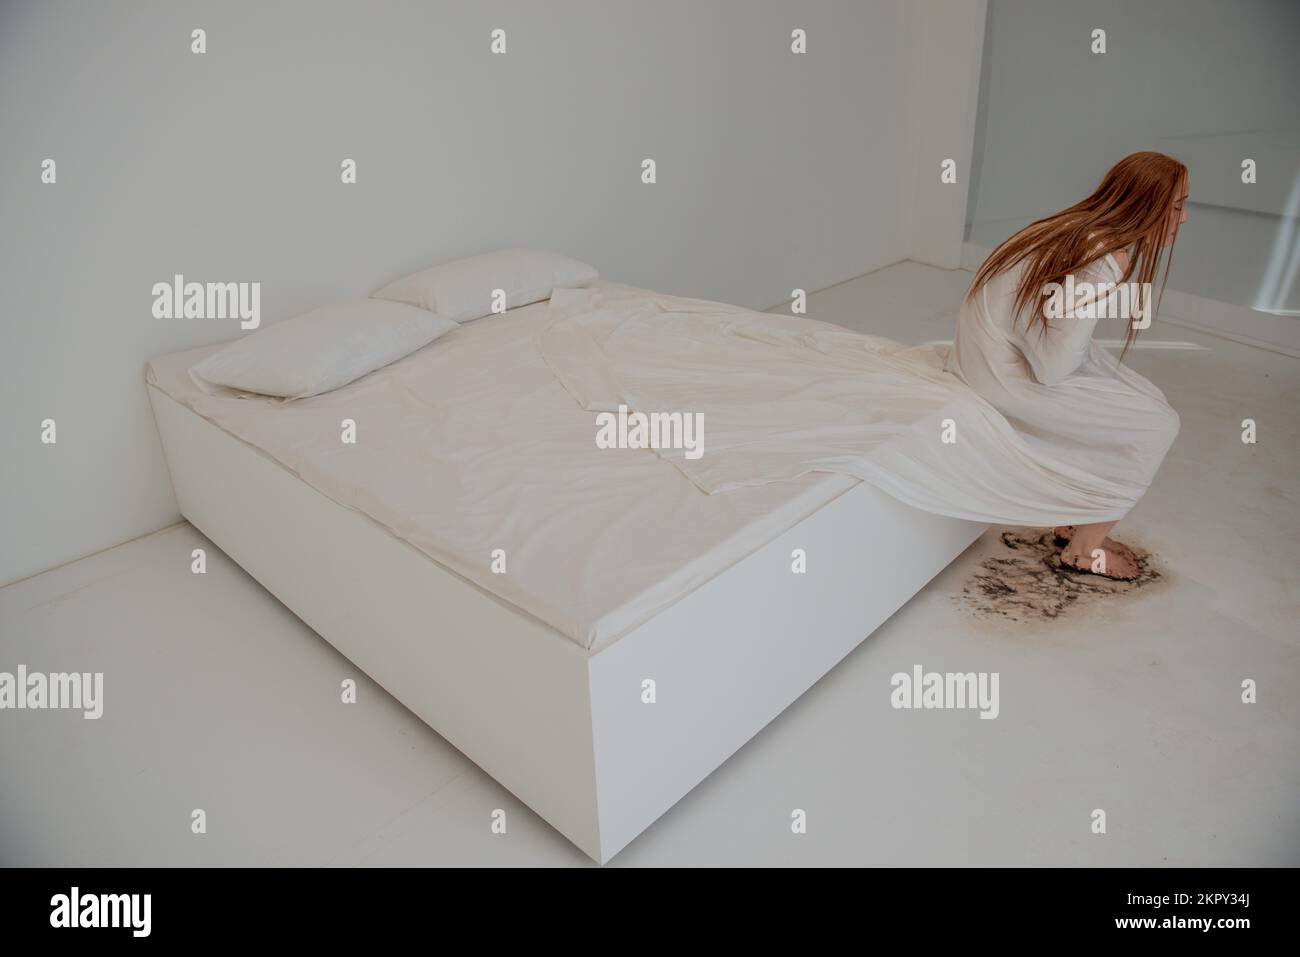 Femme dépressive assise sur un lit désordonné Banque D'Images